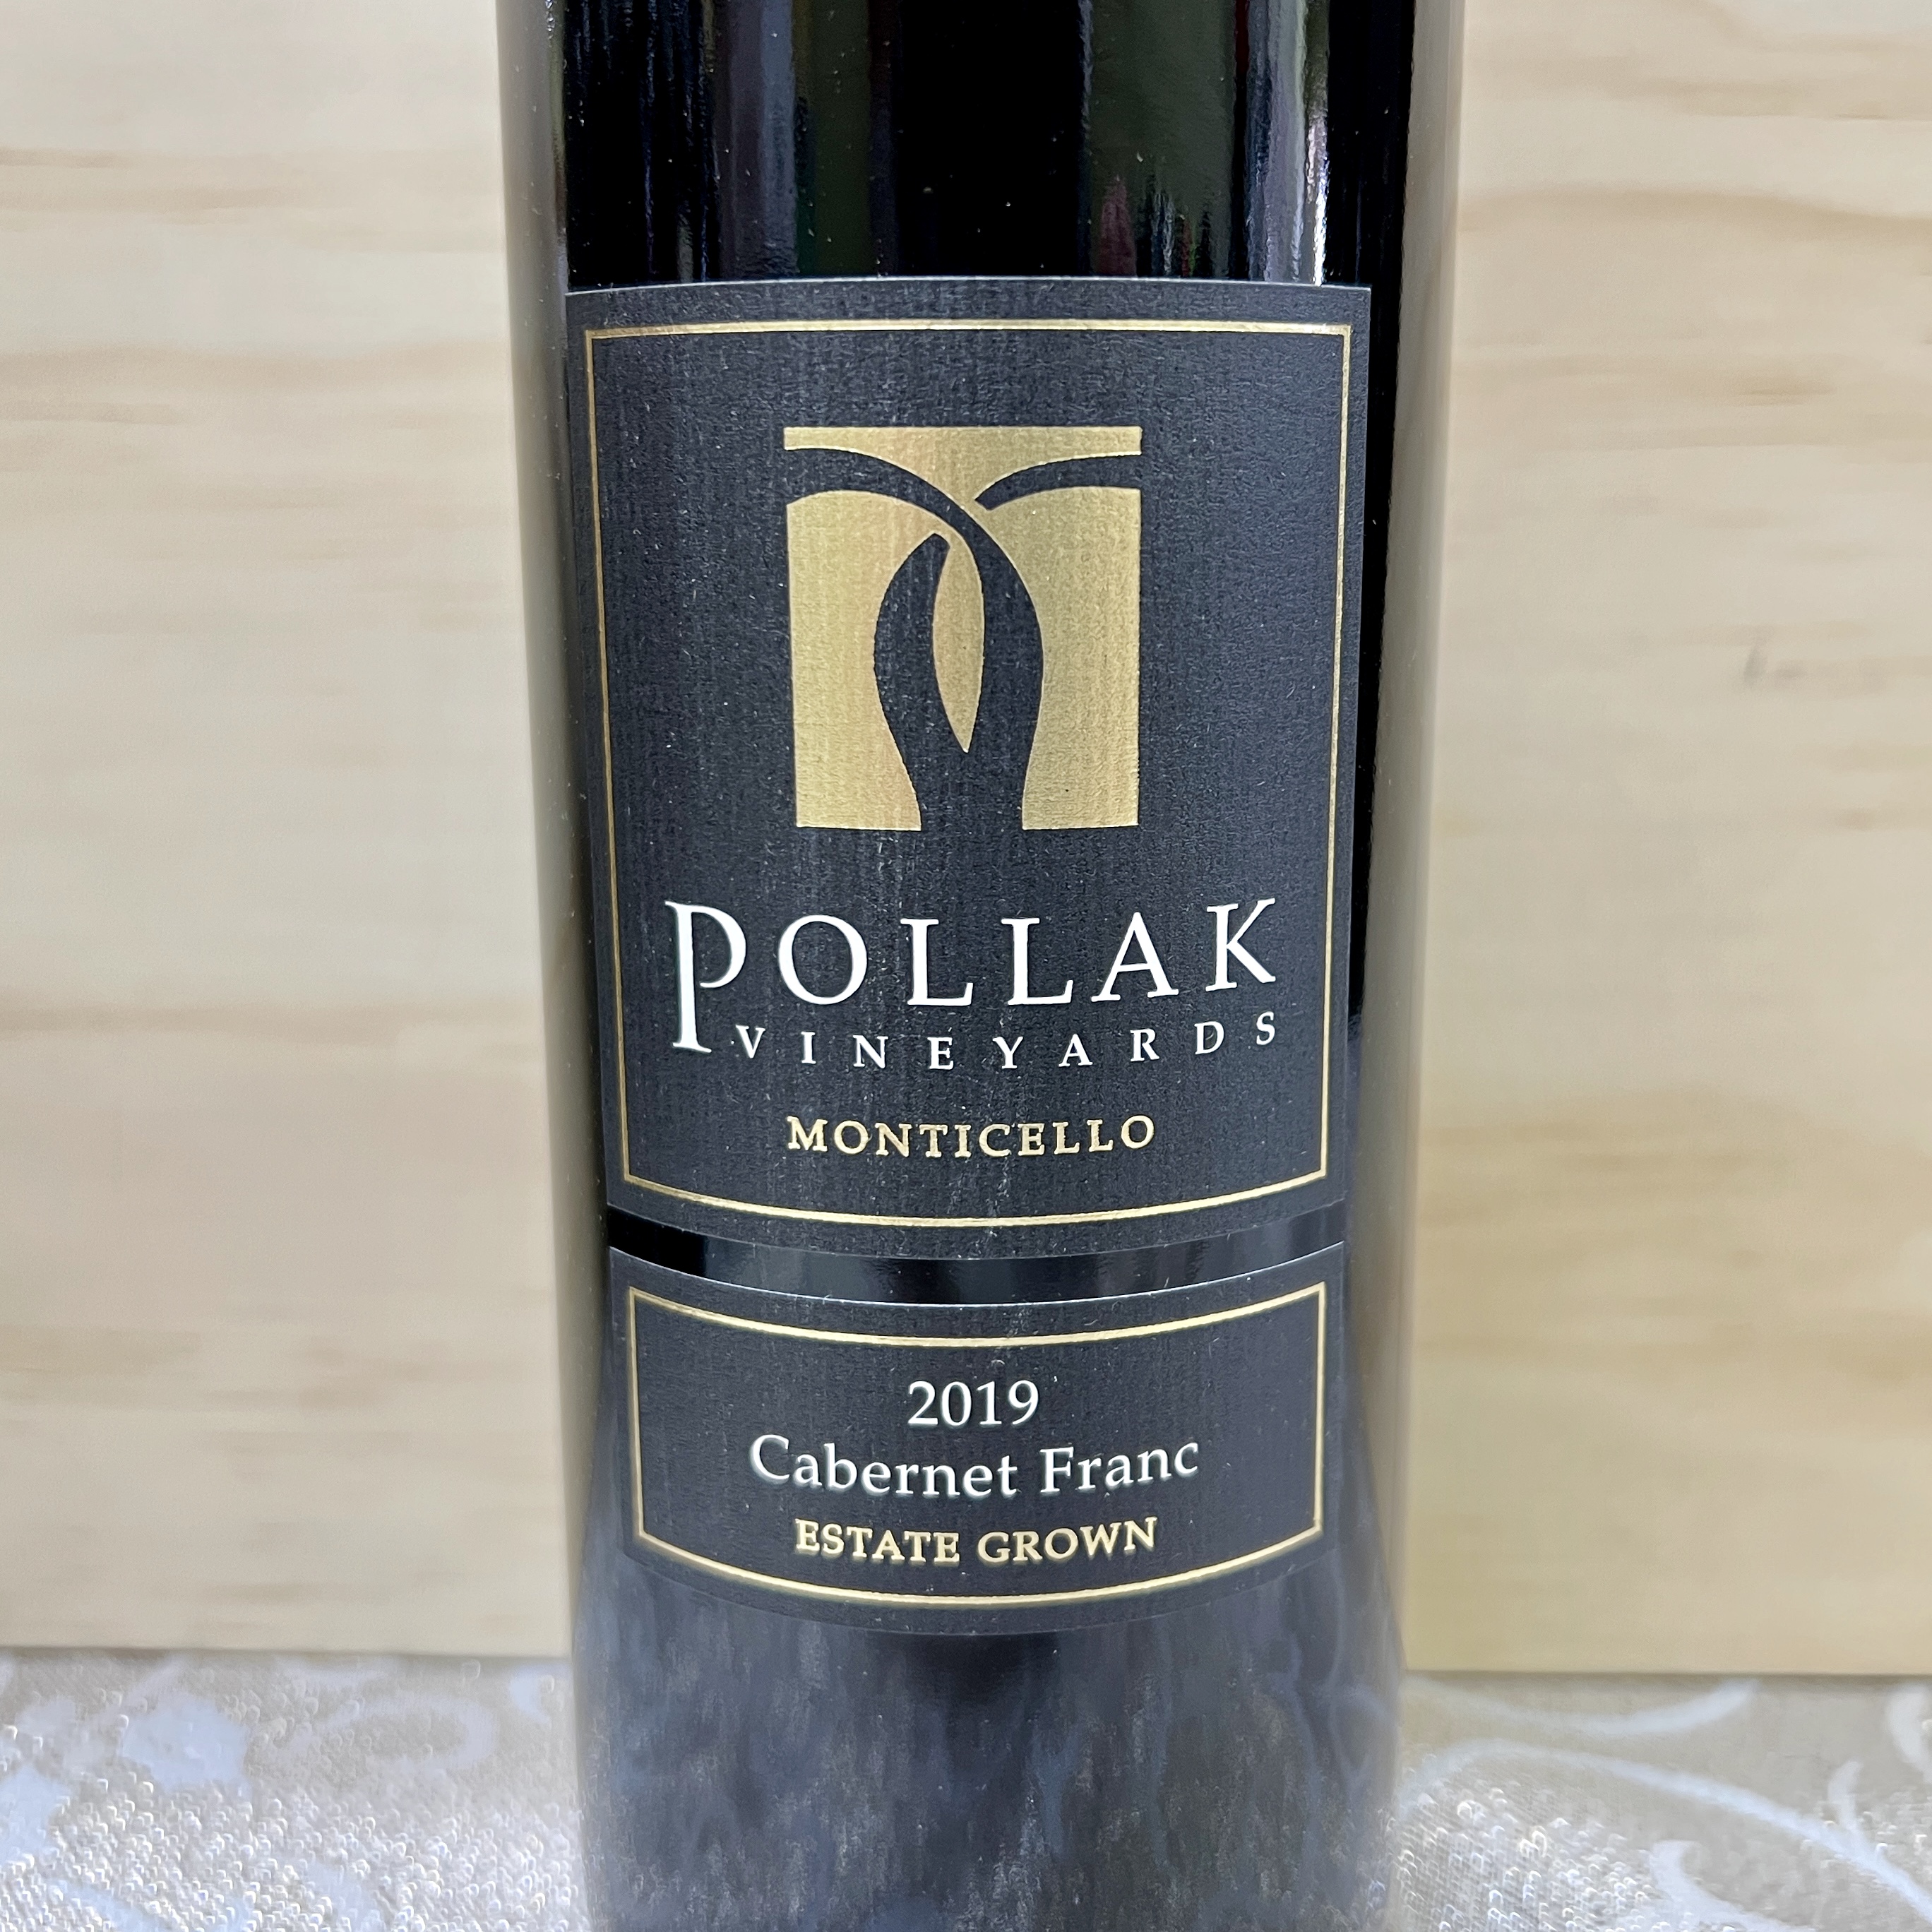 Pollak Vineyards Cabernet Franc 2019